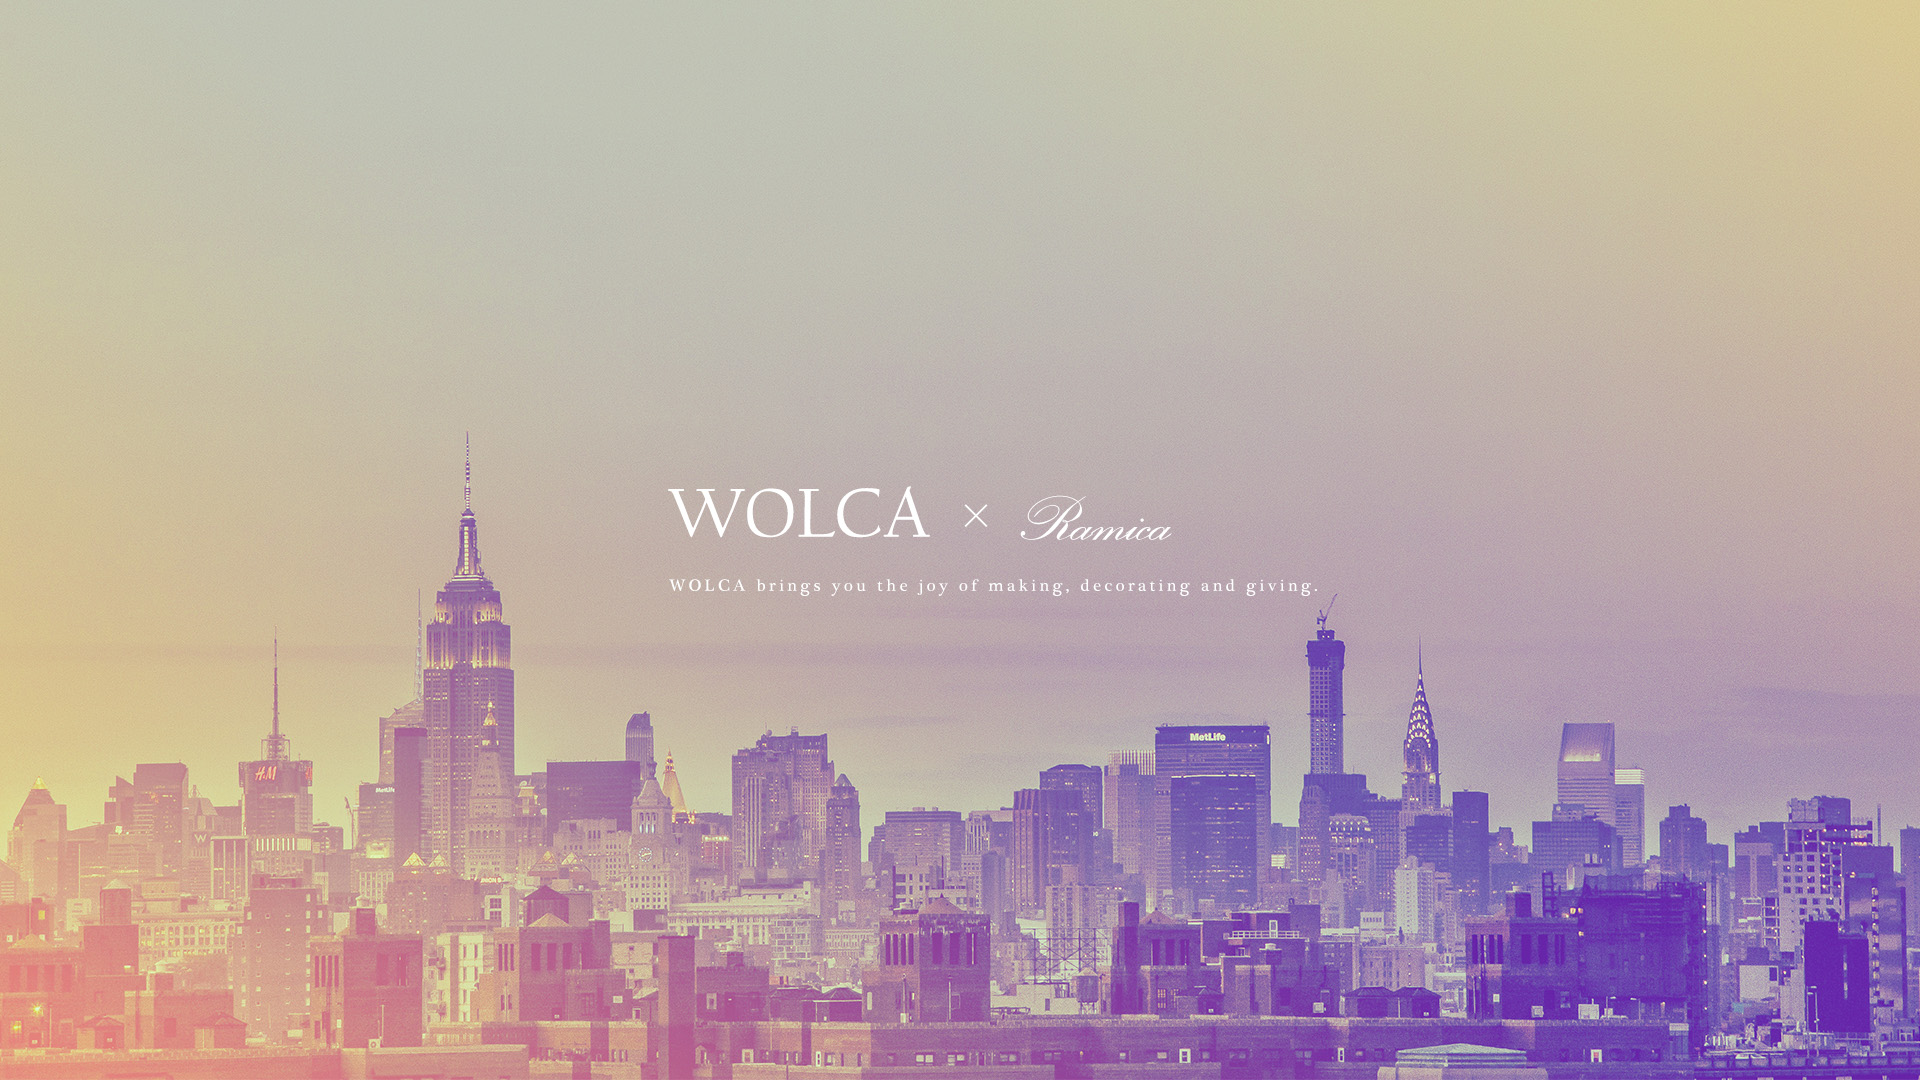 デスクトップpc用壁紙 都会のビル群の写真 Wolca